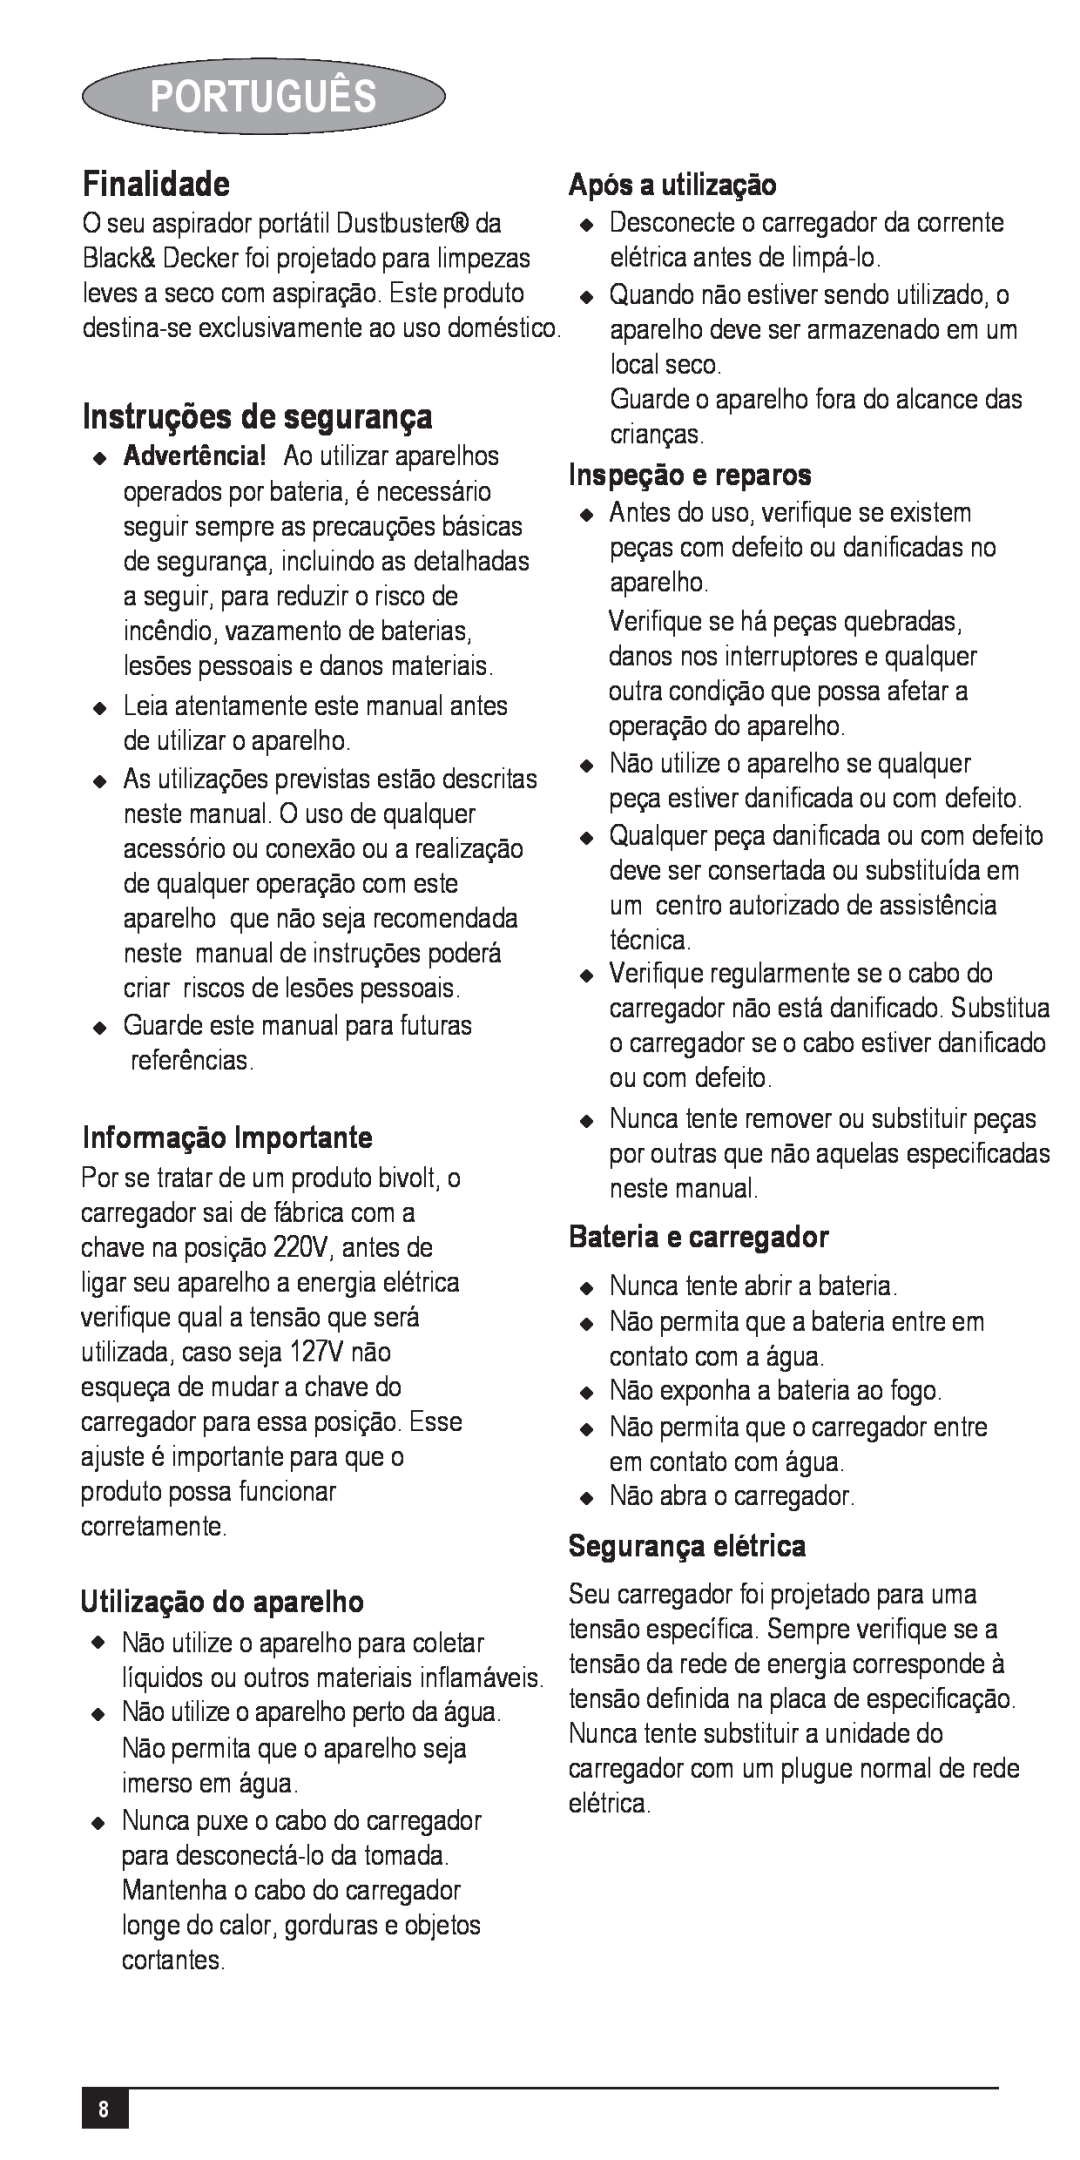 Black & Decker VA050025D Português, Finalidade, Instruções de segurança, Informação Importante, Utilização do aparelho 